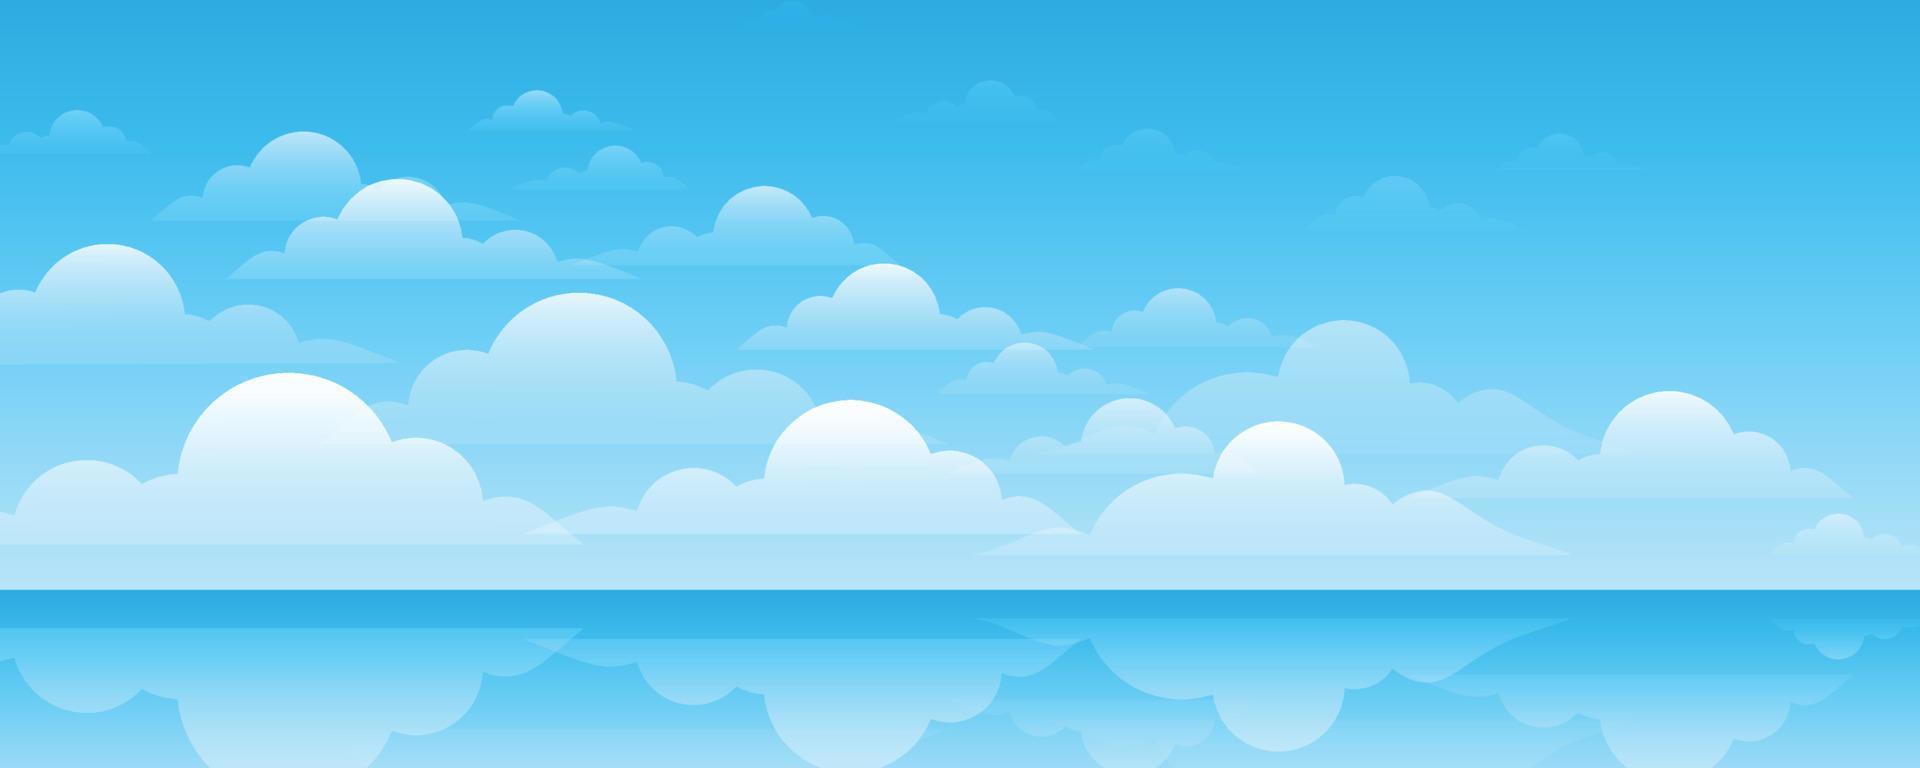 Nền trời xanh với đám mây quả là một cảnh tượng đẹp mê hồn. Hãy chào đón những cảnh đẹp tuyệt vời này trong chiếc ảnh Blue sky background with clouds